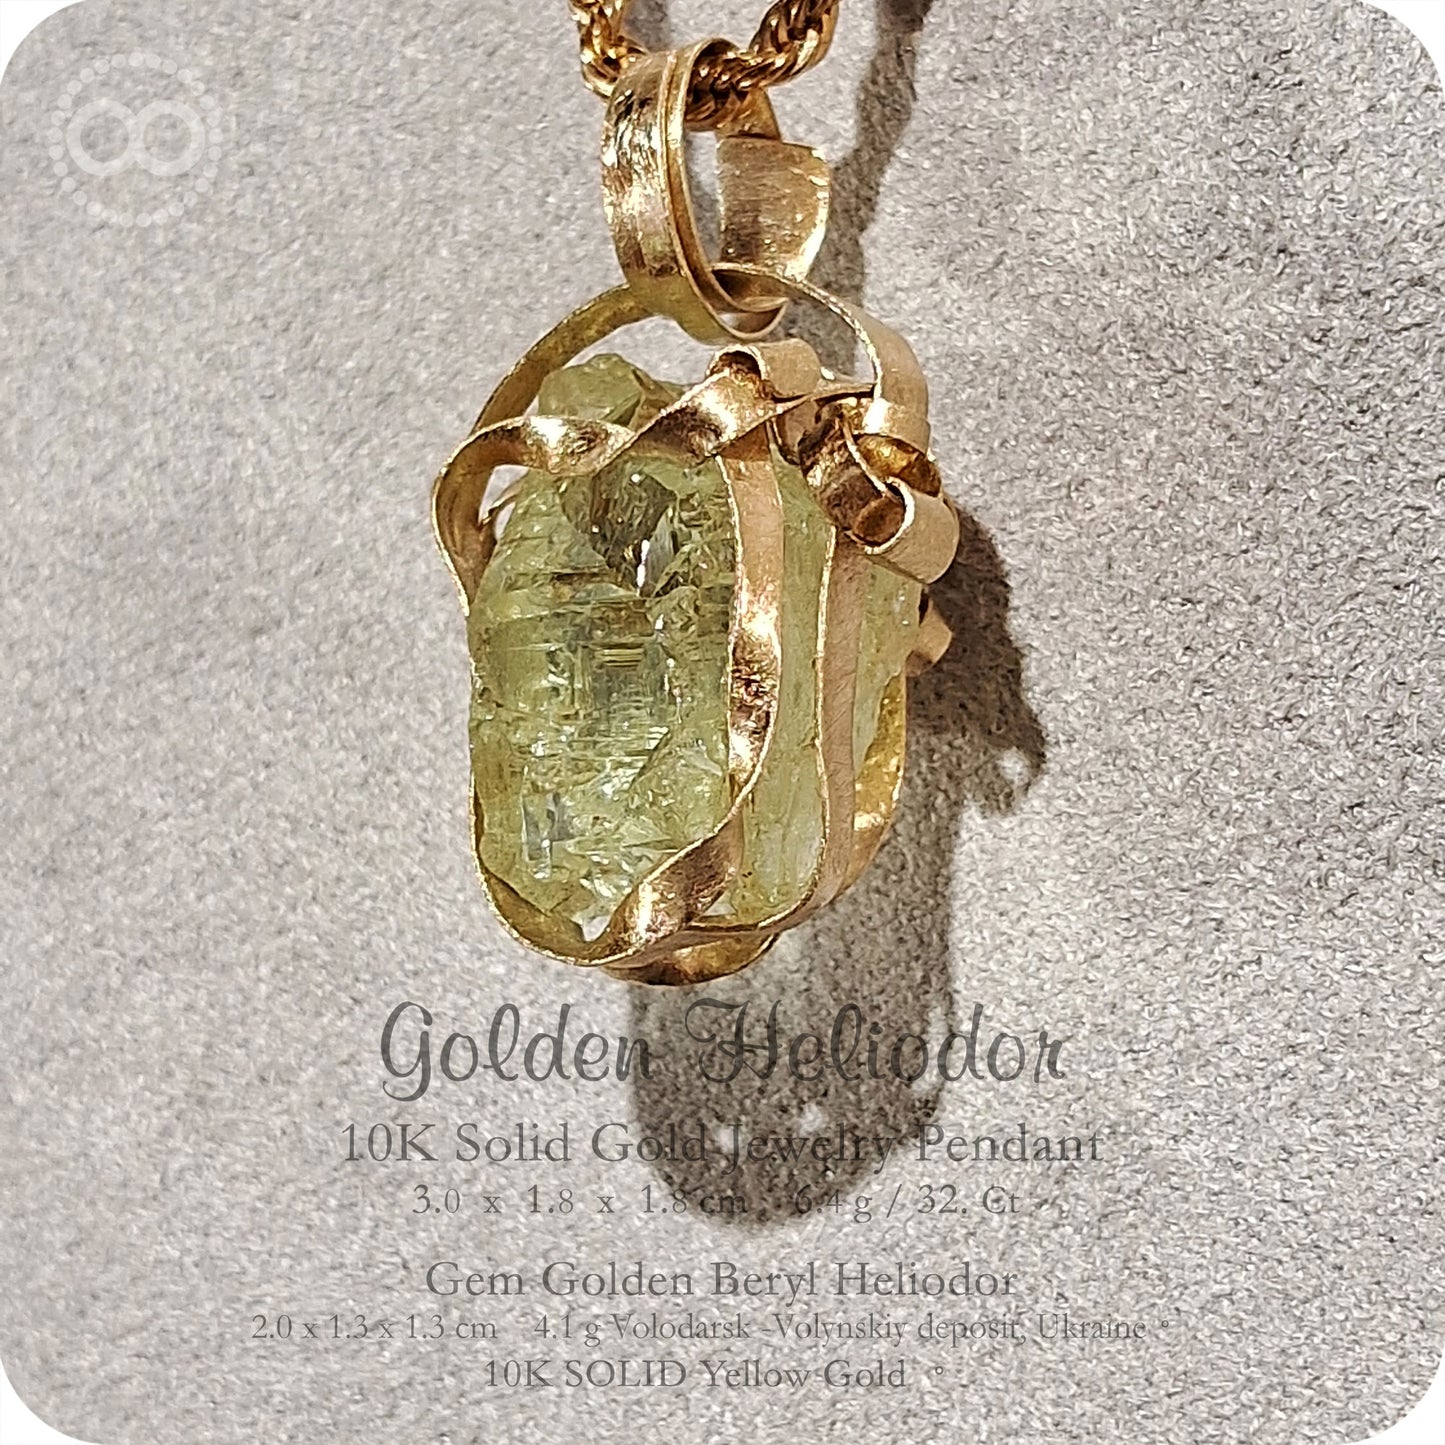 Gem Golden Heliodor 10K SOLID Gold Pendant - H236